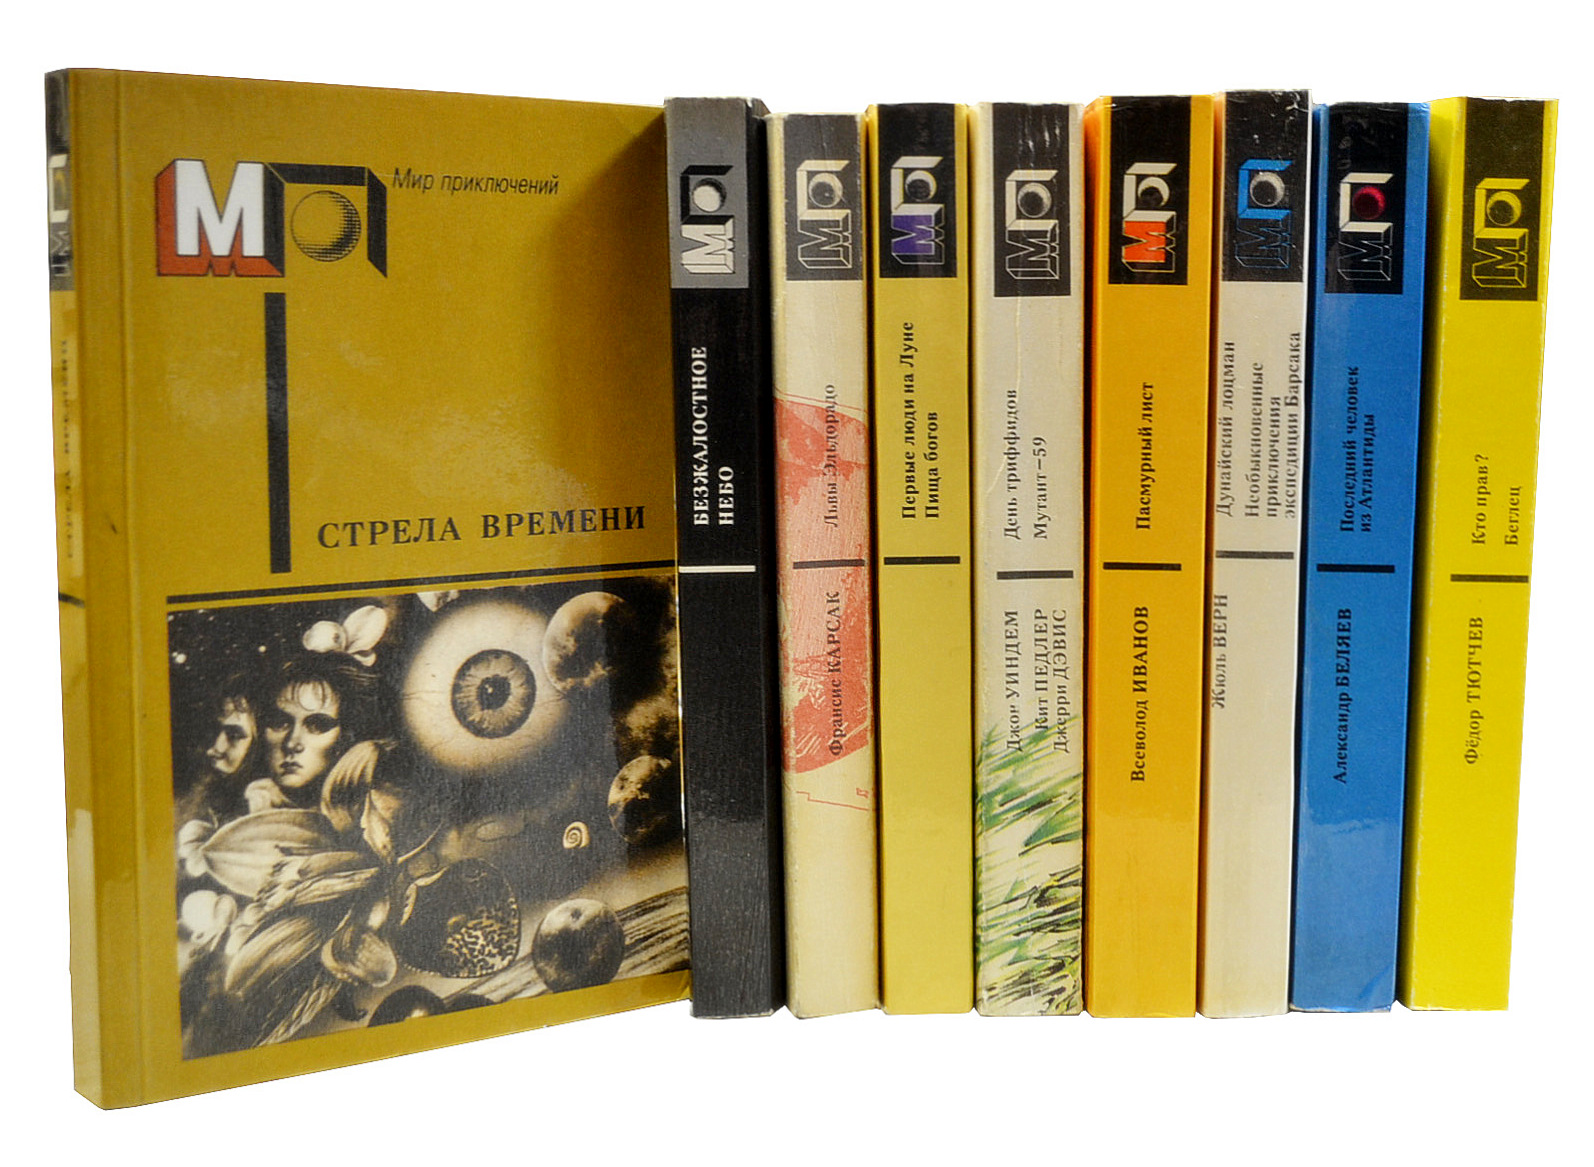 Из 9 книг и 6 журналов. Советские книги мир приключений. Обложки книг мир приключений.